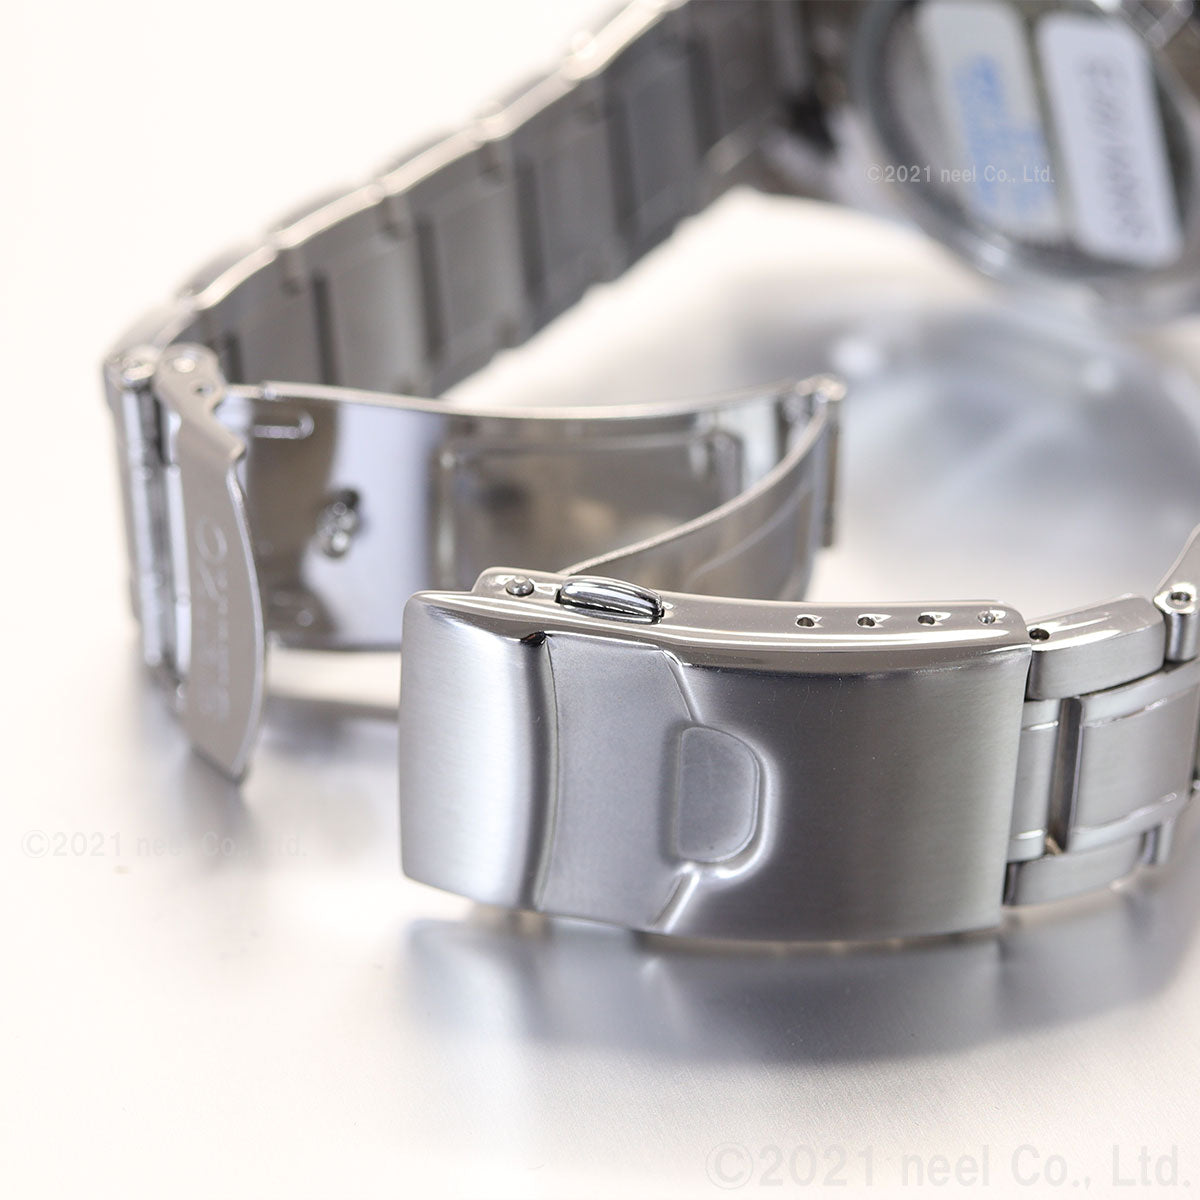 セイコー メカニカル 自動巻き 腕時計 メンズ SEIKO Mechanical SARV003